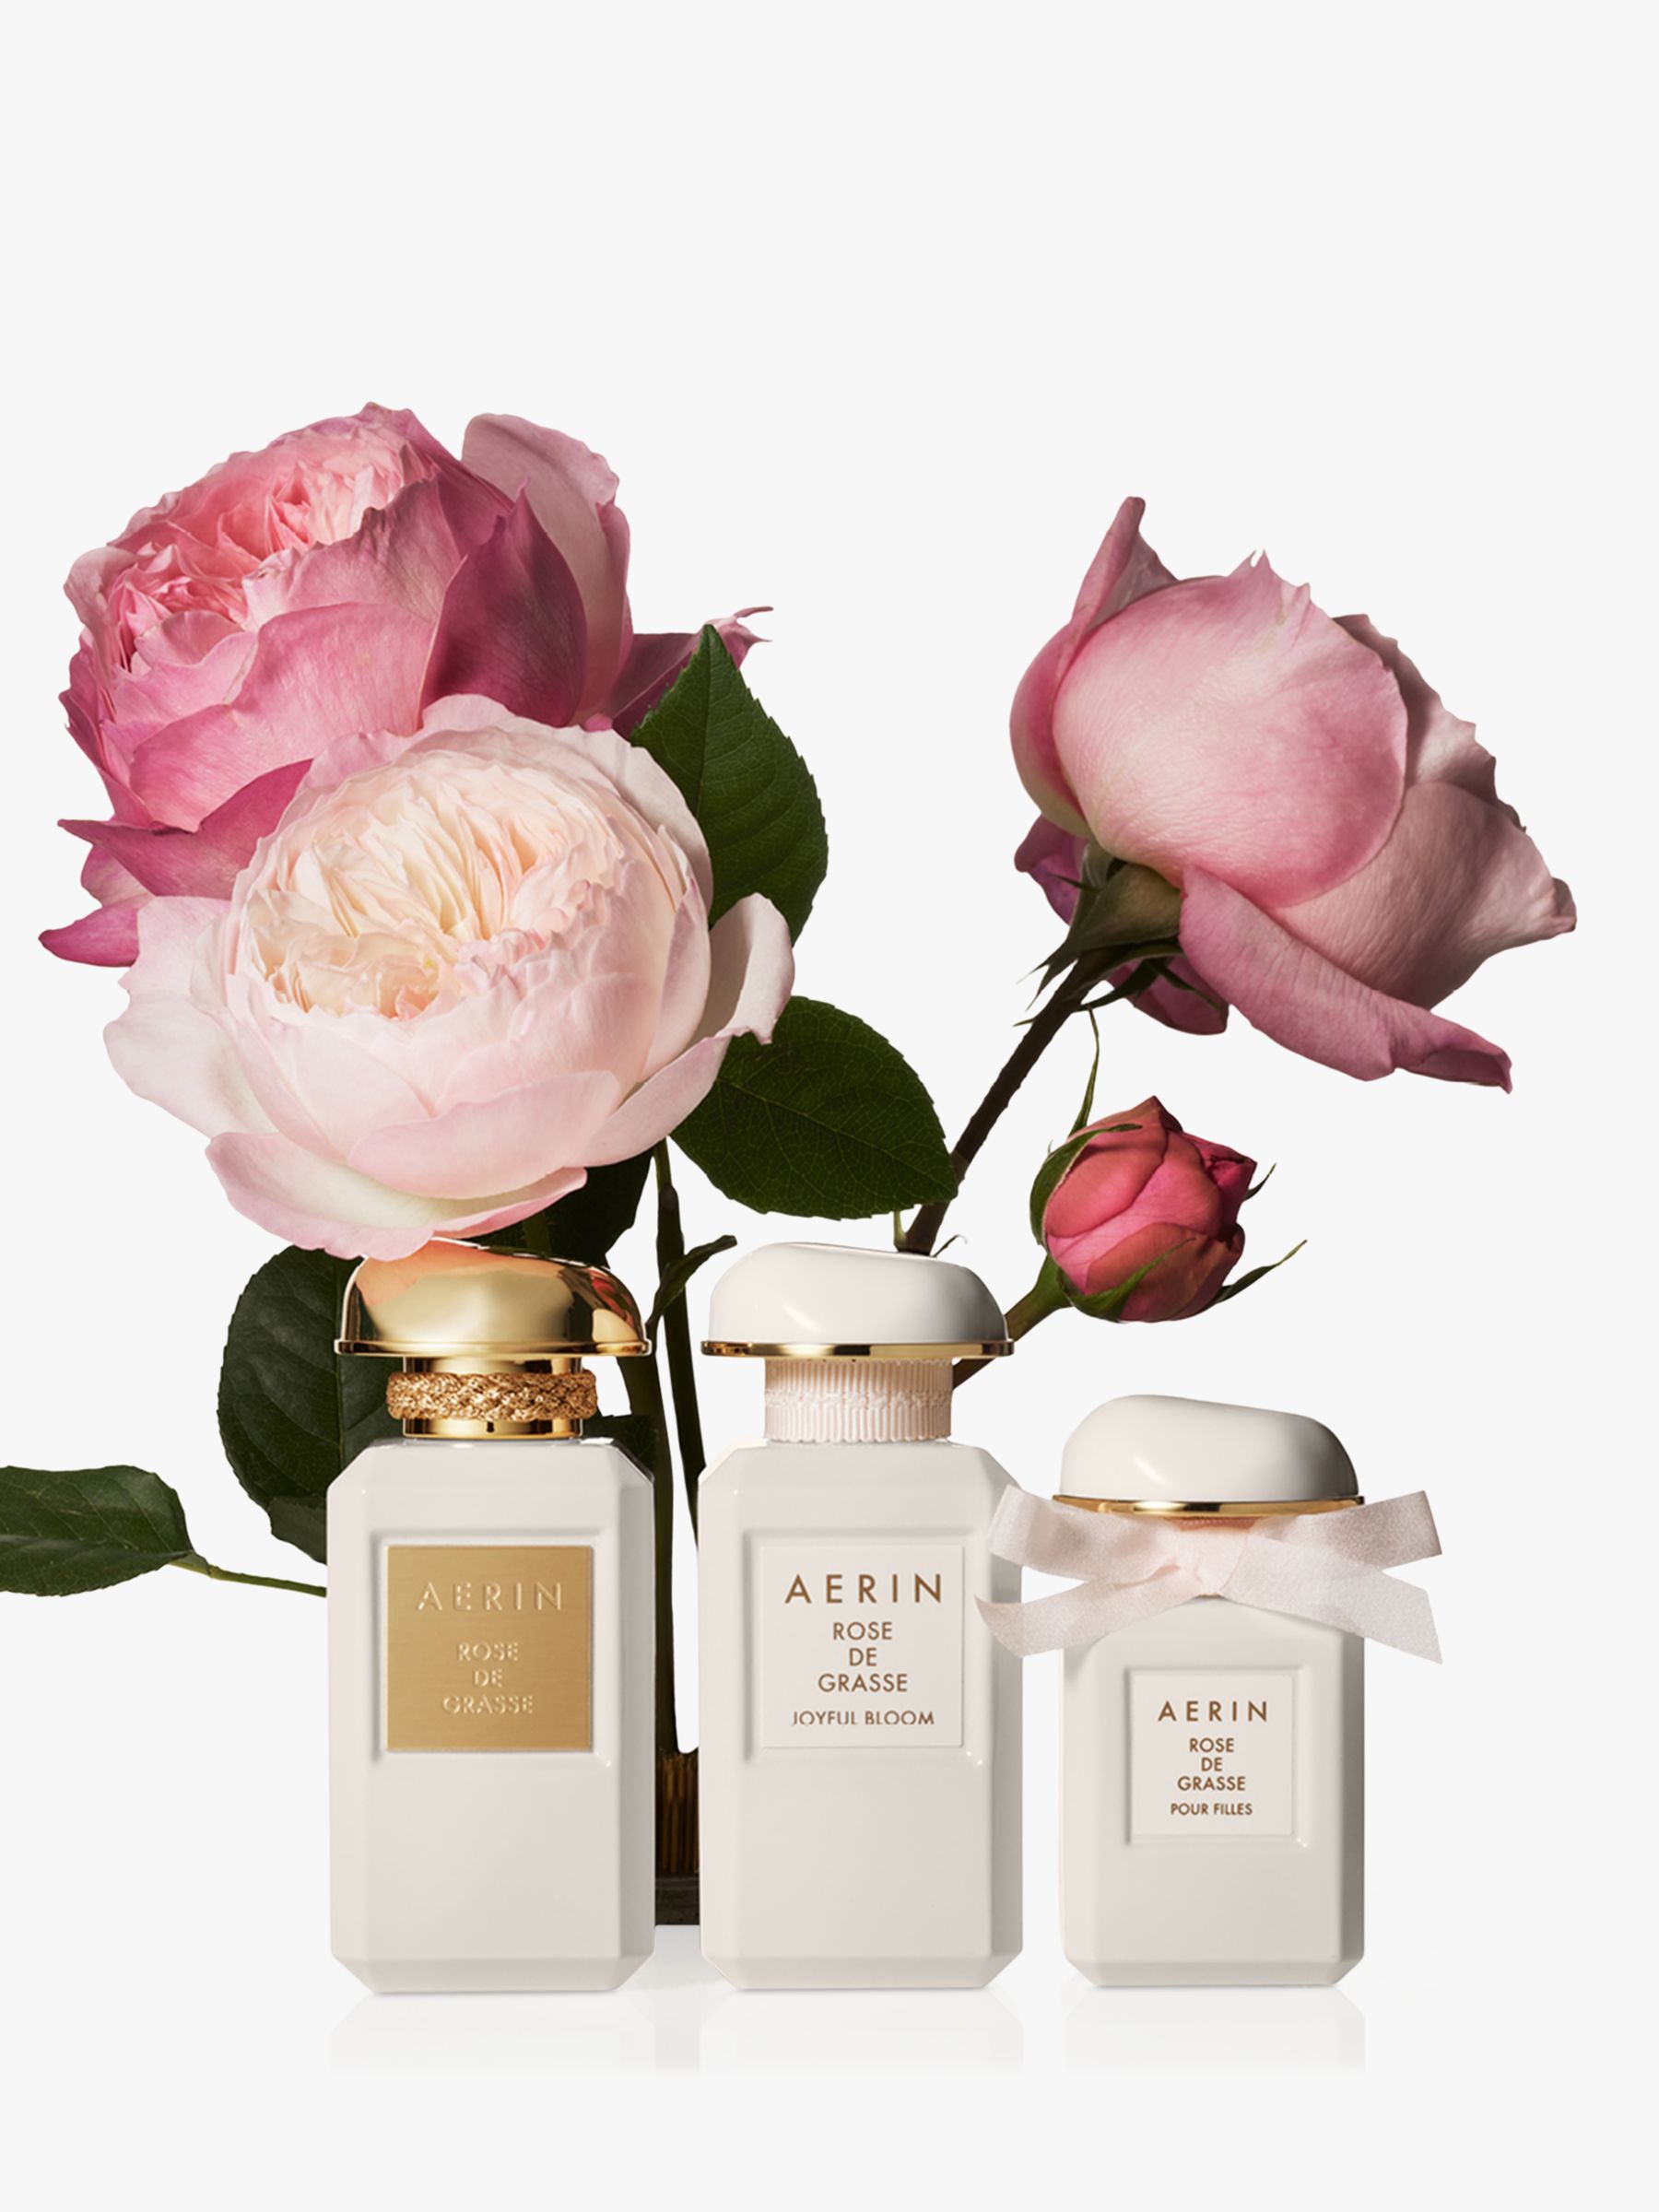 AERIN Rose de Grasse Pour Filles Eau de Parfum, 30ml 4